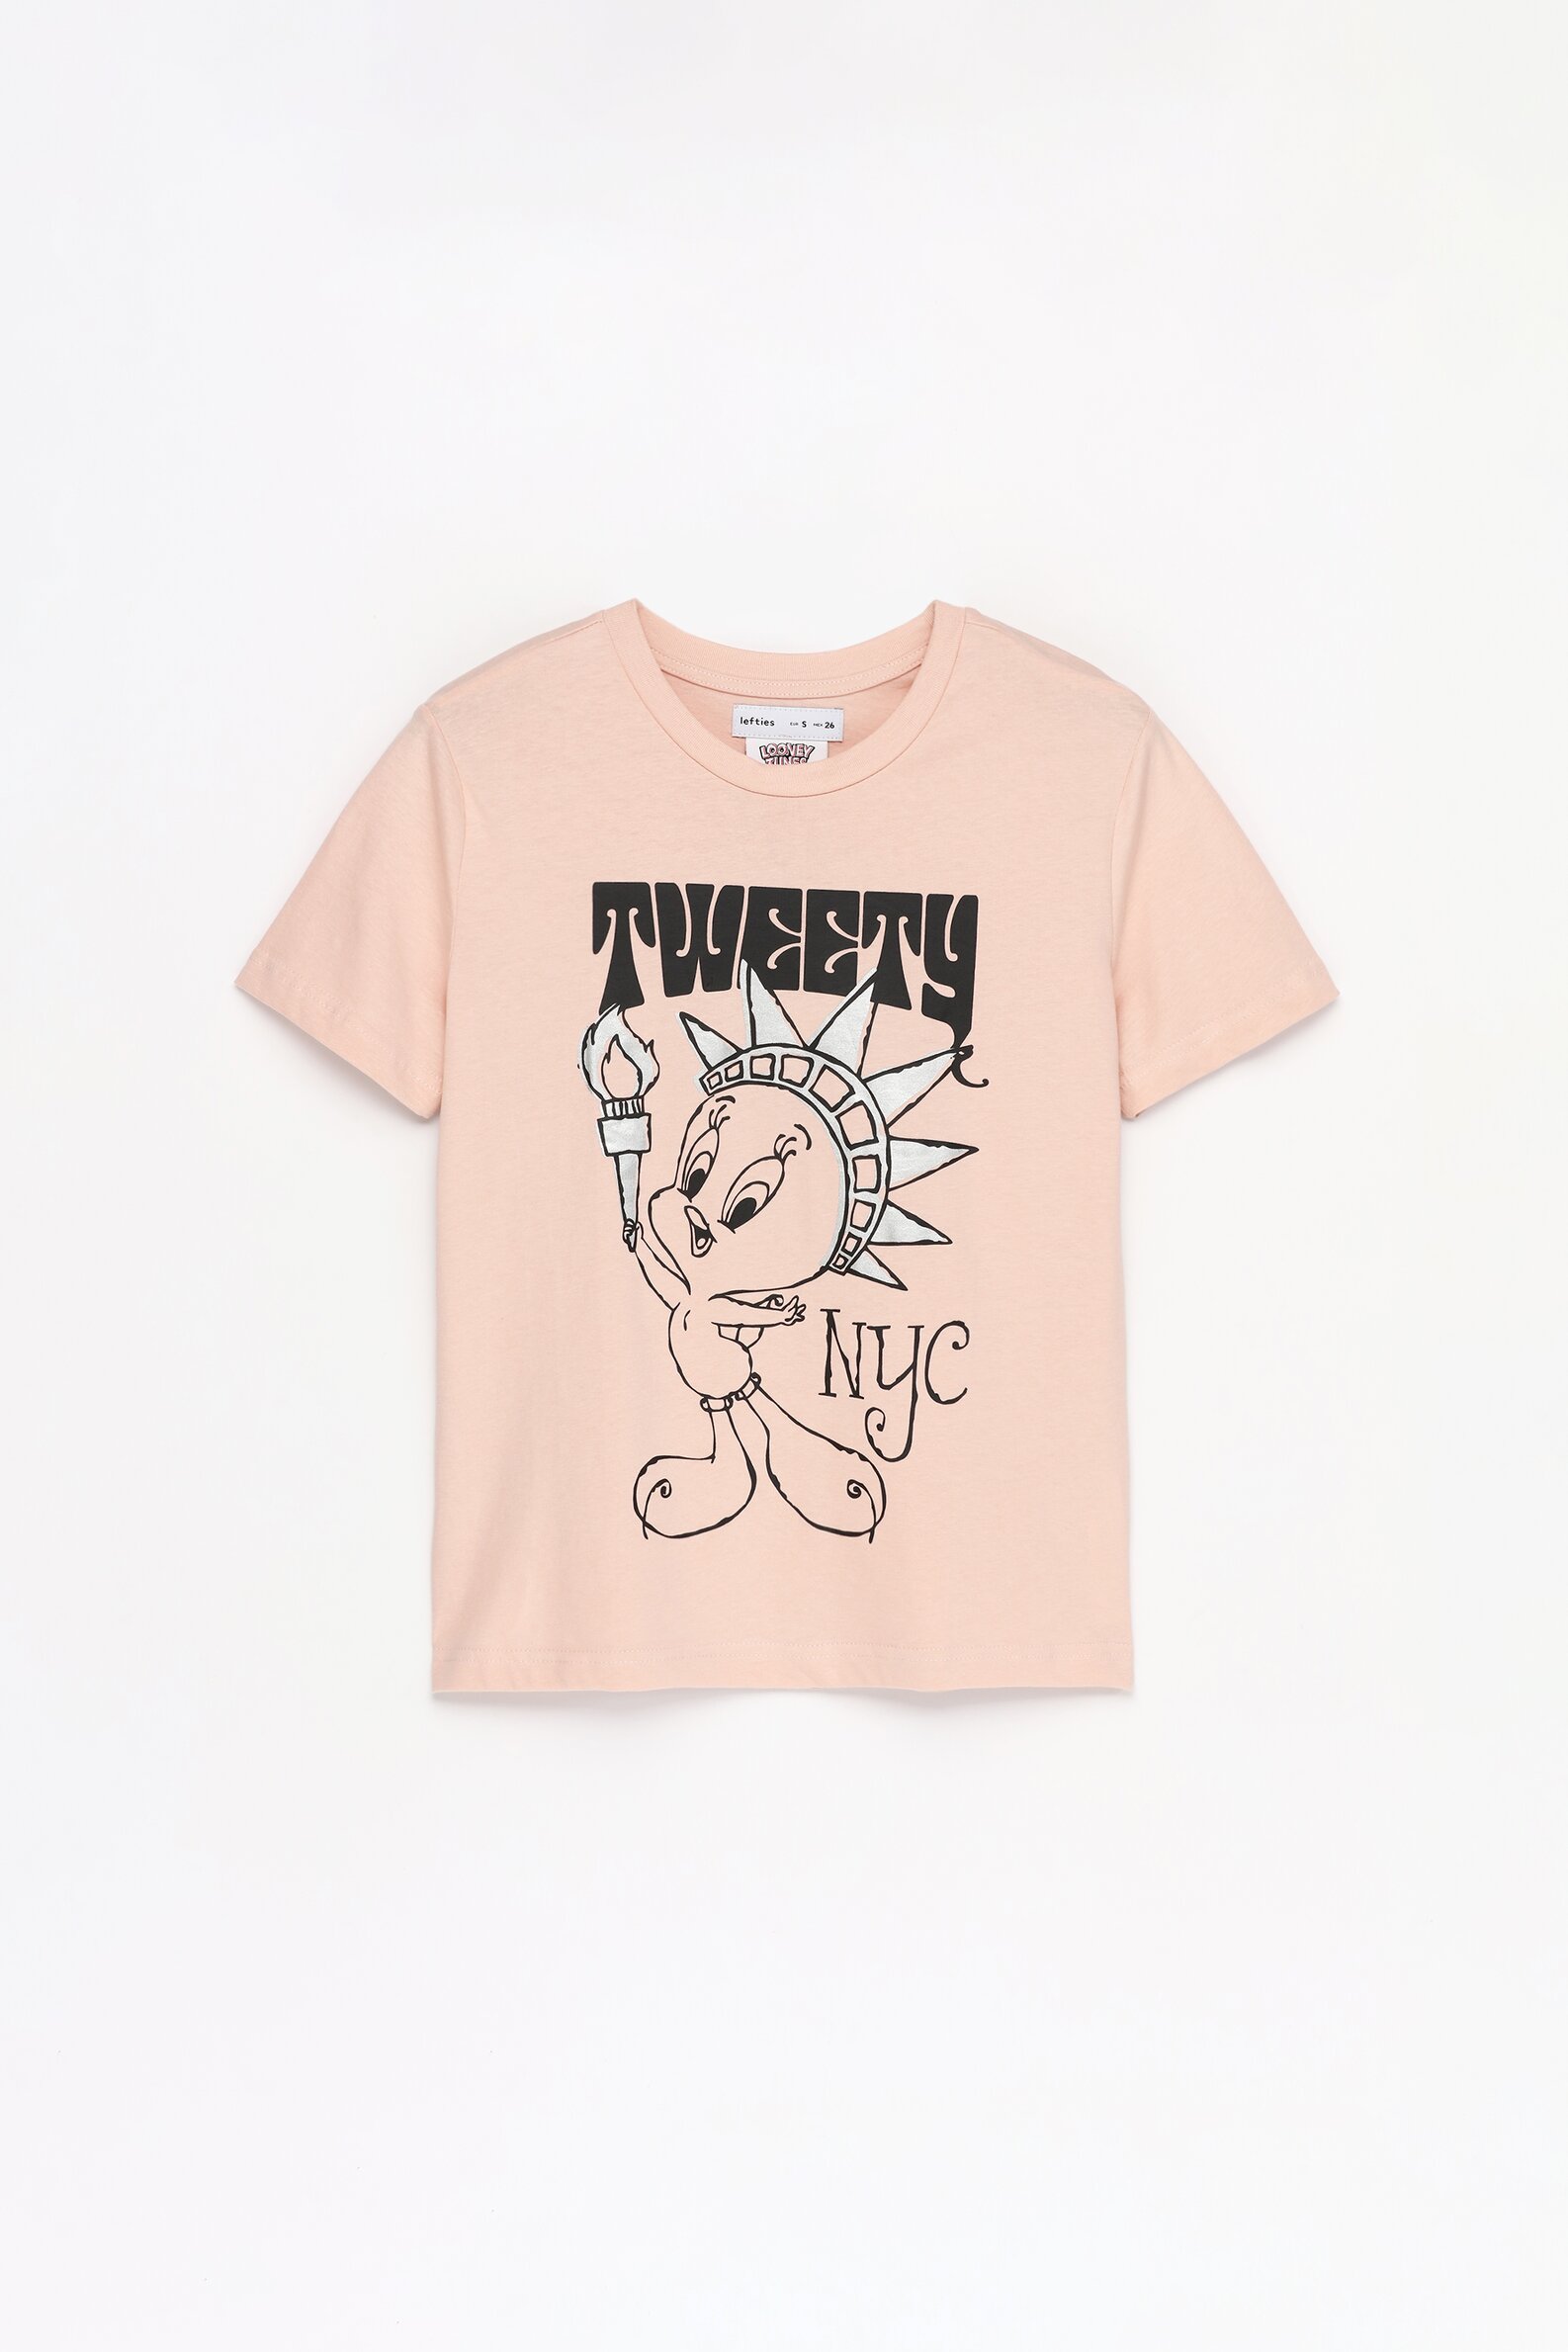 Looney Tunes Kid Girl Tweety Print Hoodie Sweatshirt